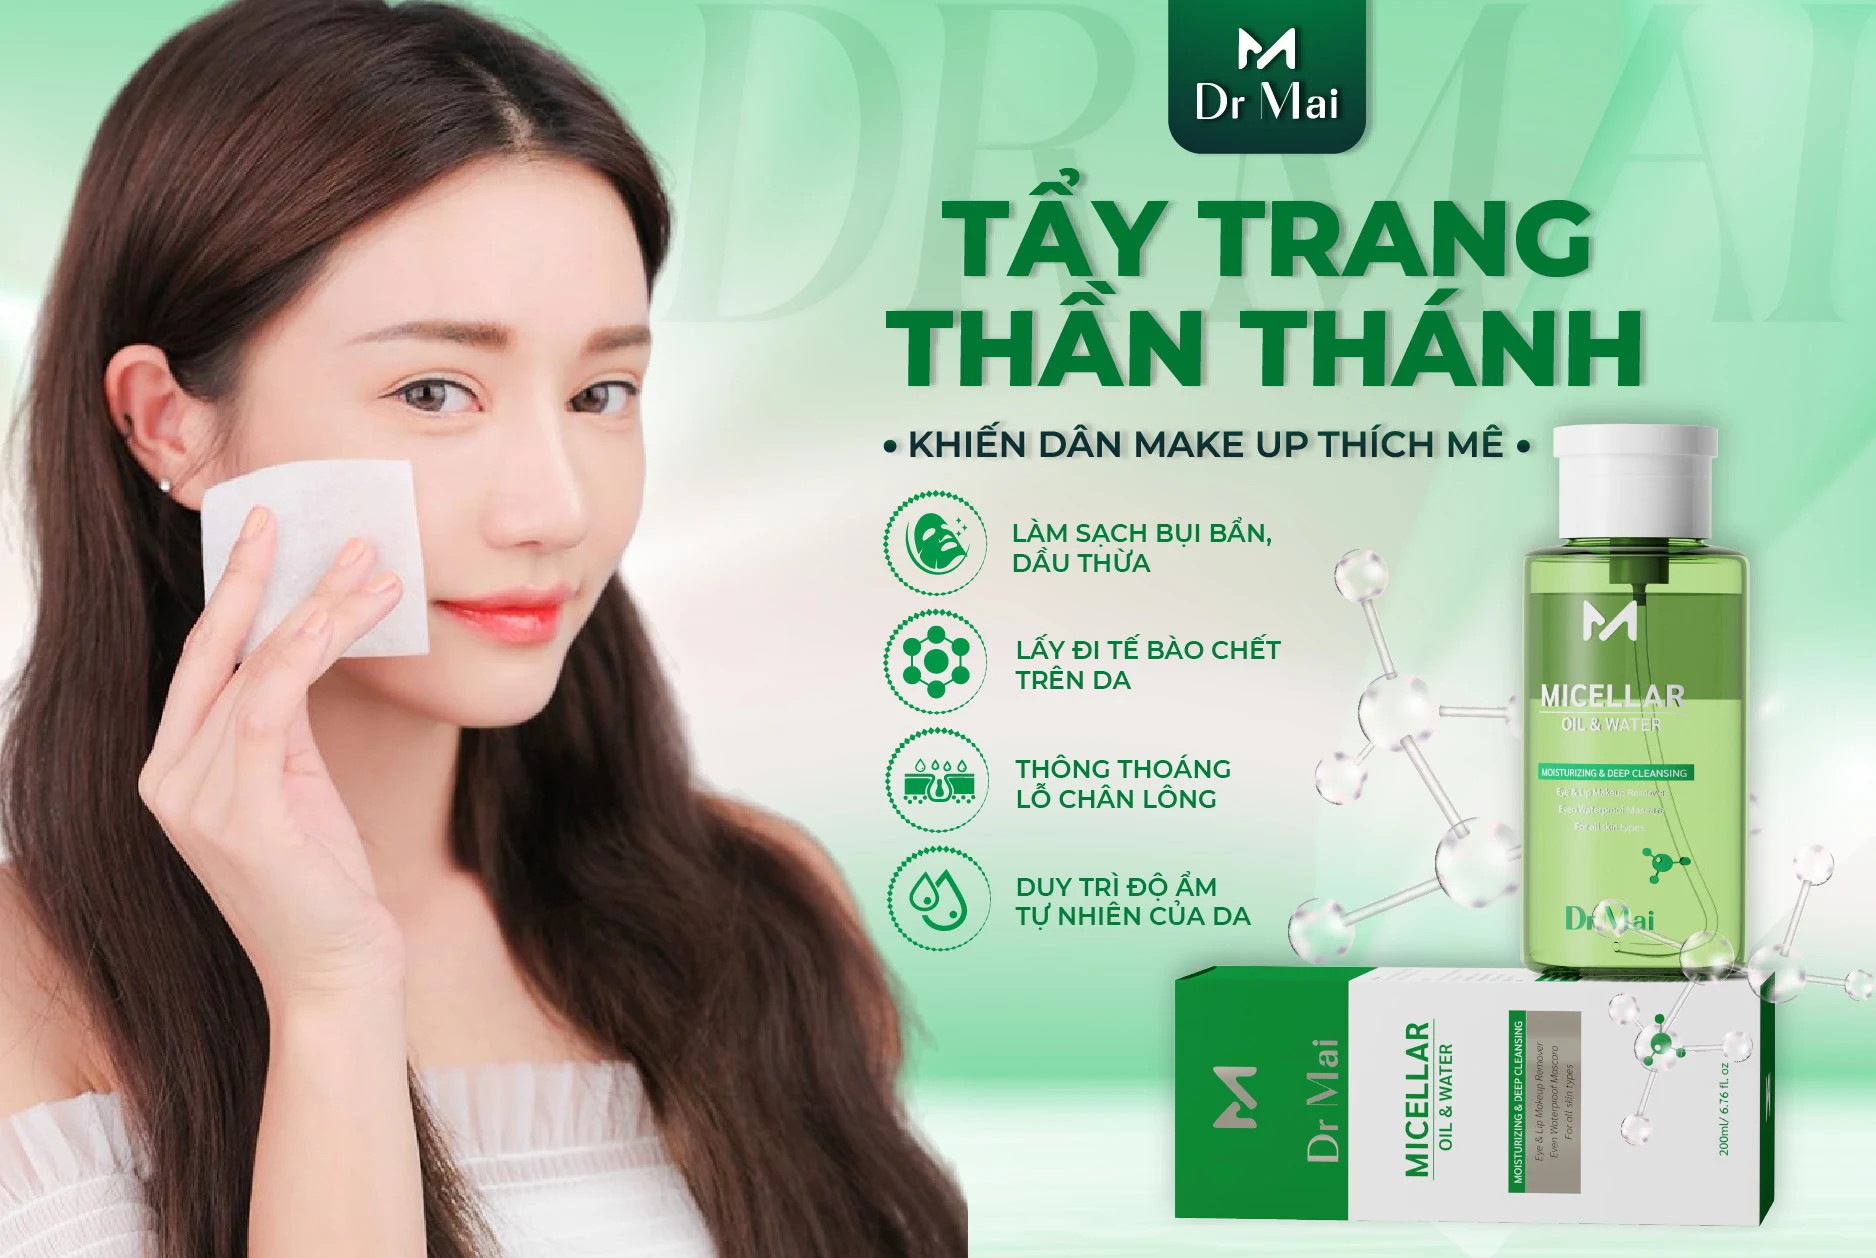 Nước tẩy trang Dr Mai giúp loại bỏ bụi bẩn, lớp makeup cứng đầu